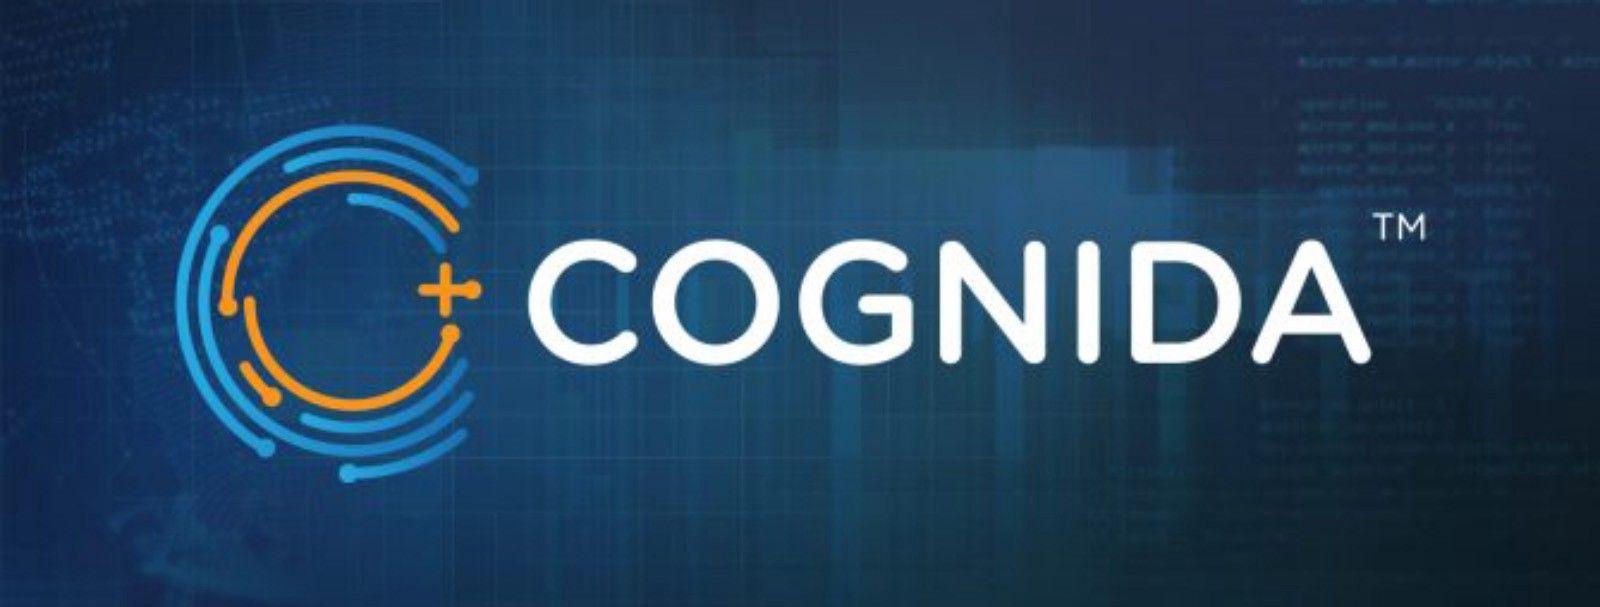 Blue Management Platform Logo - Cognida (COG) ICO Analysis: An Enterprise Data Management Platform